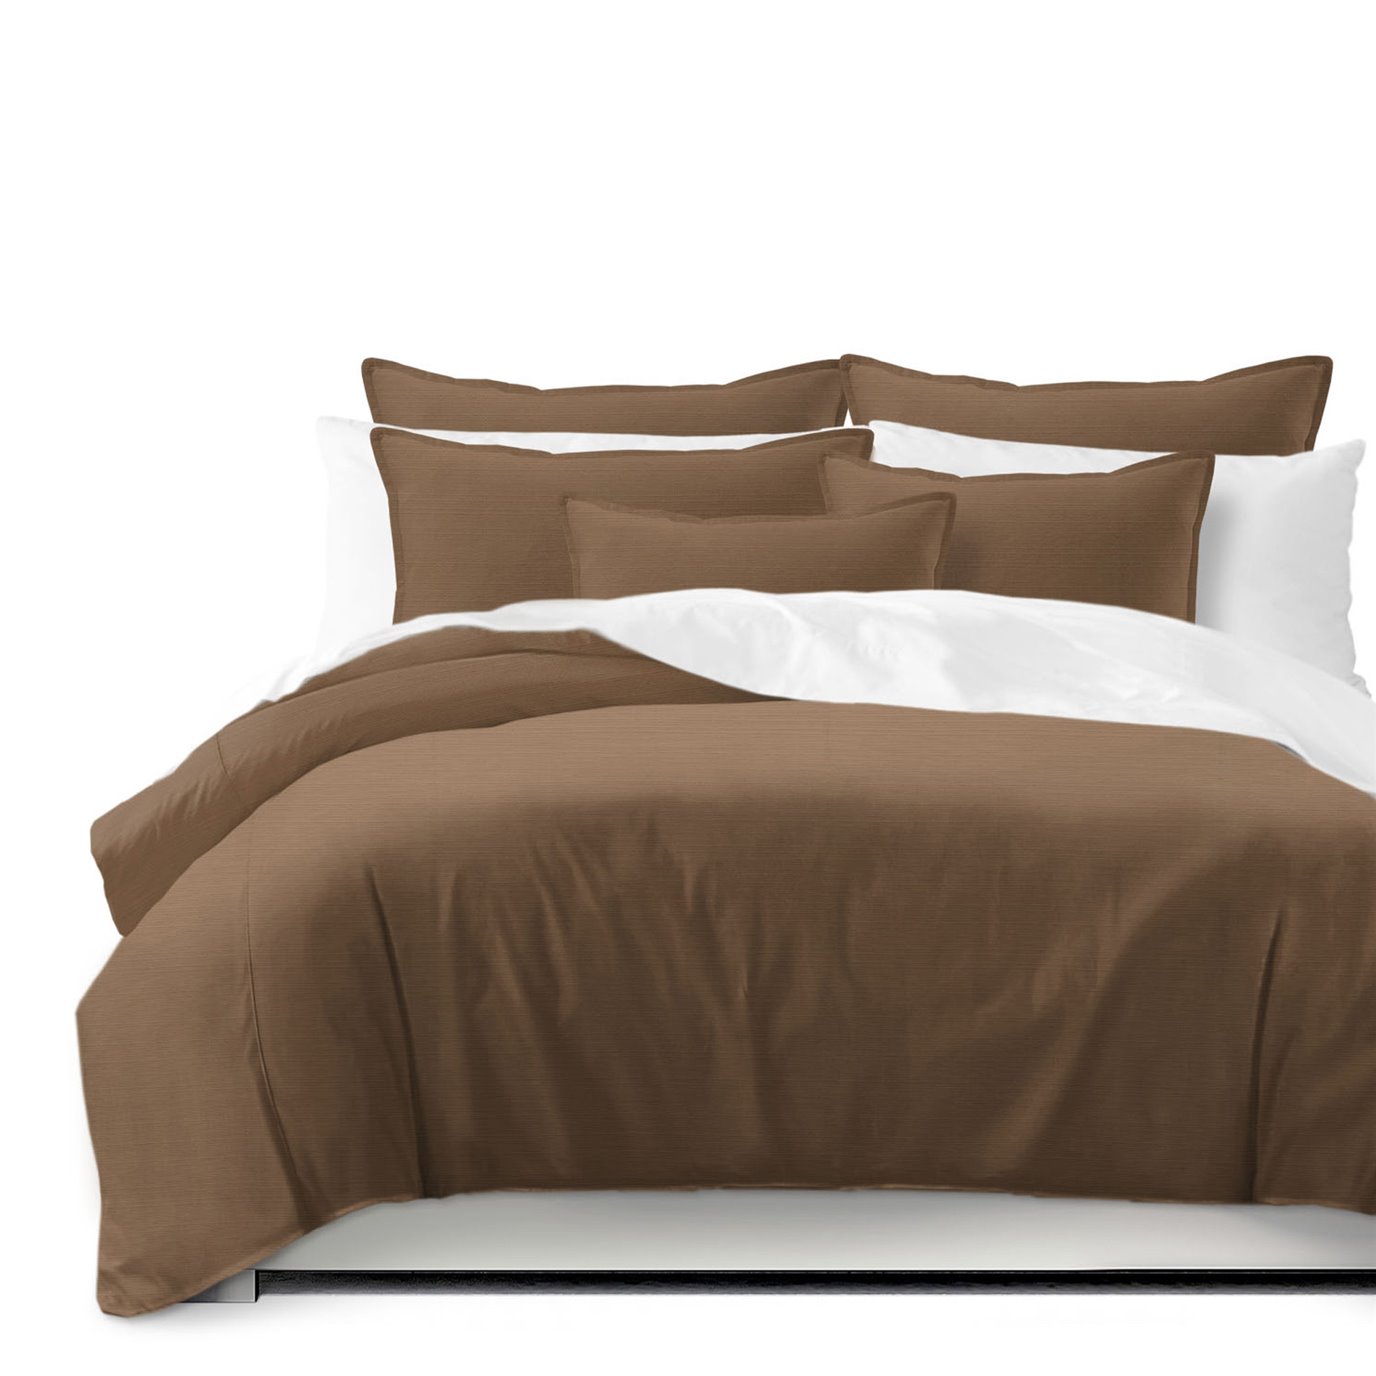 Nova Walnut Coverlet and Pillow Sham(s) Set - Size Queen